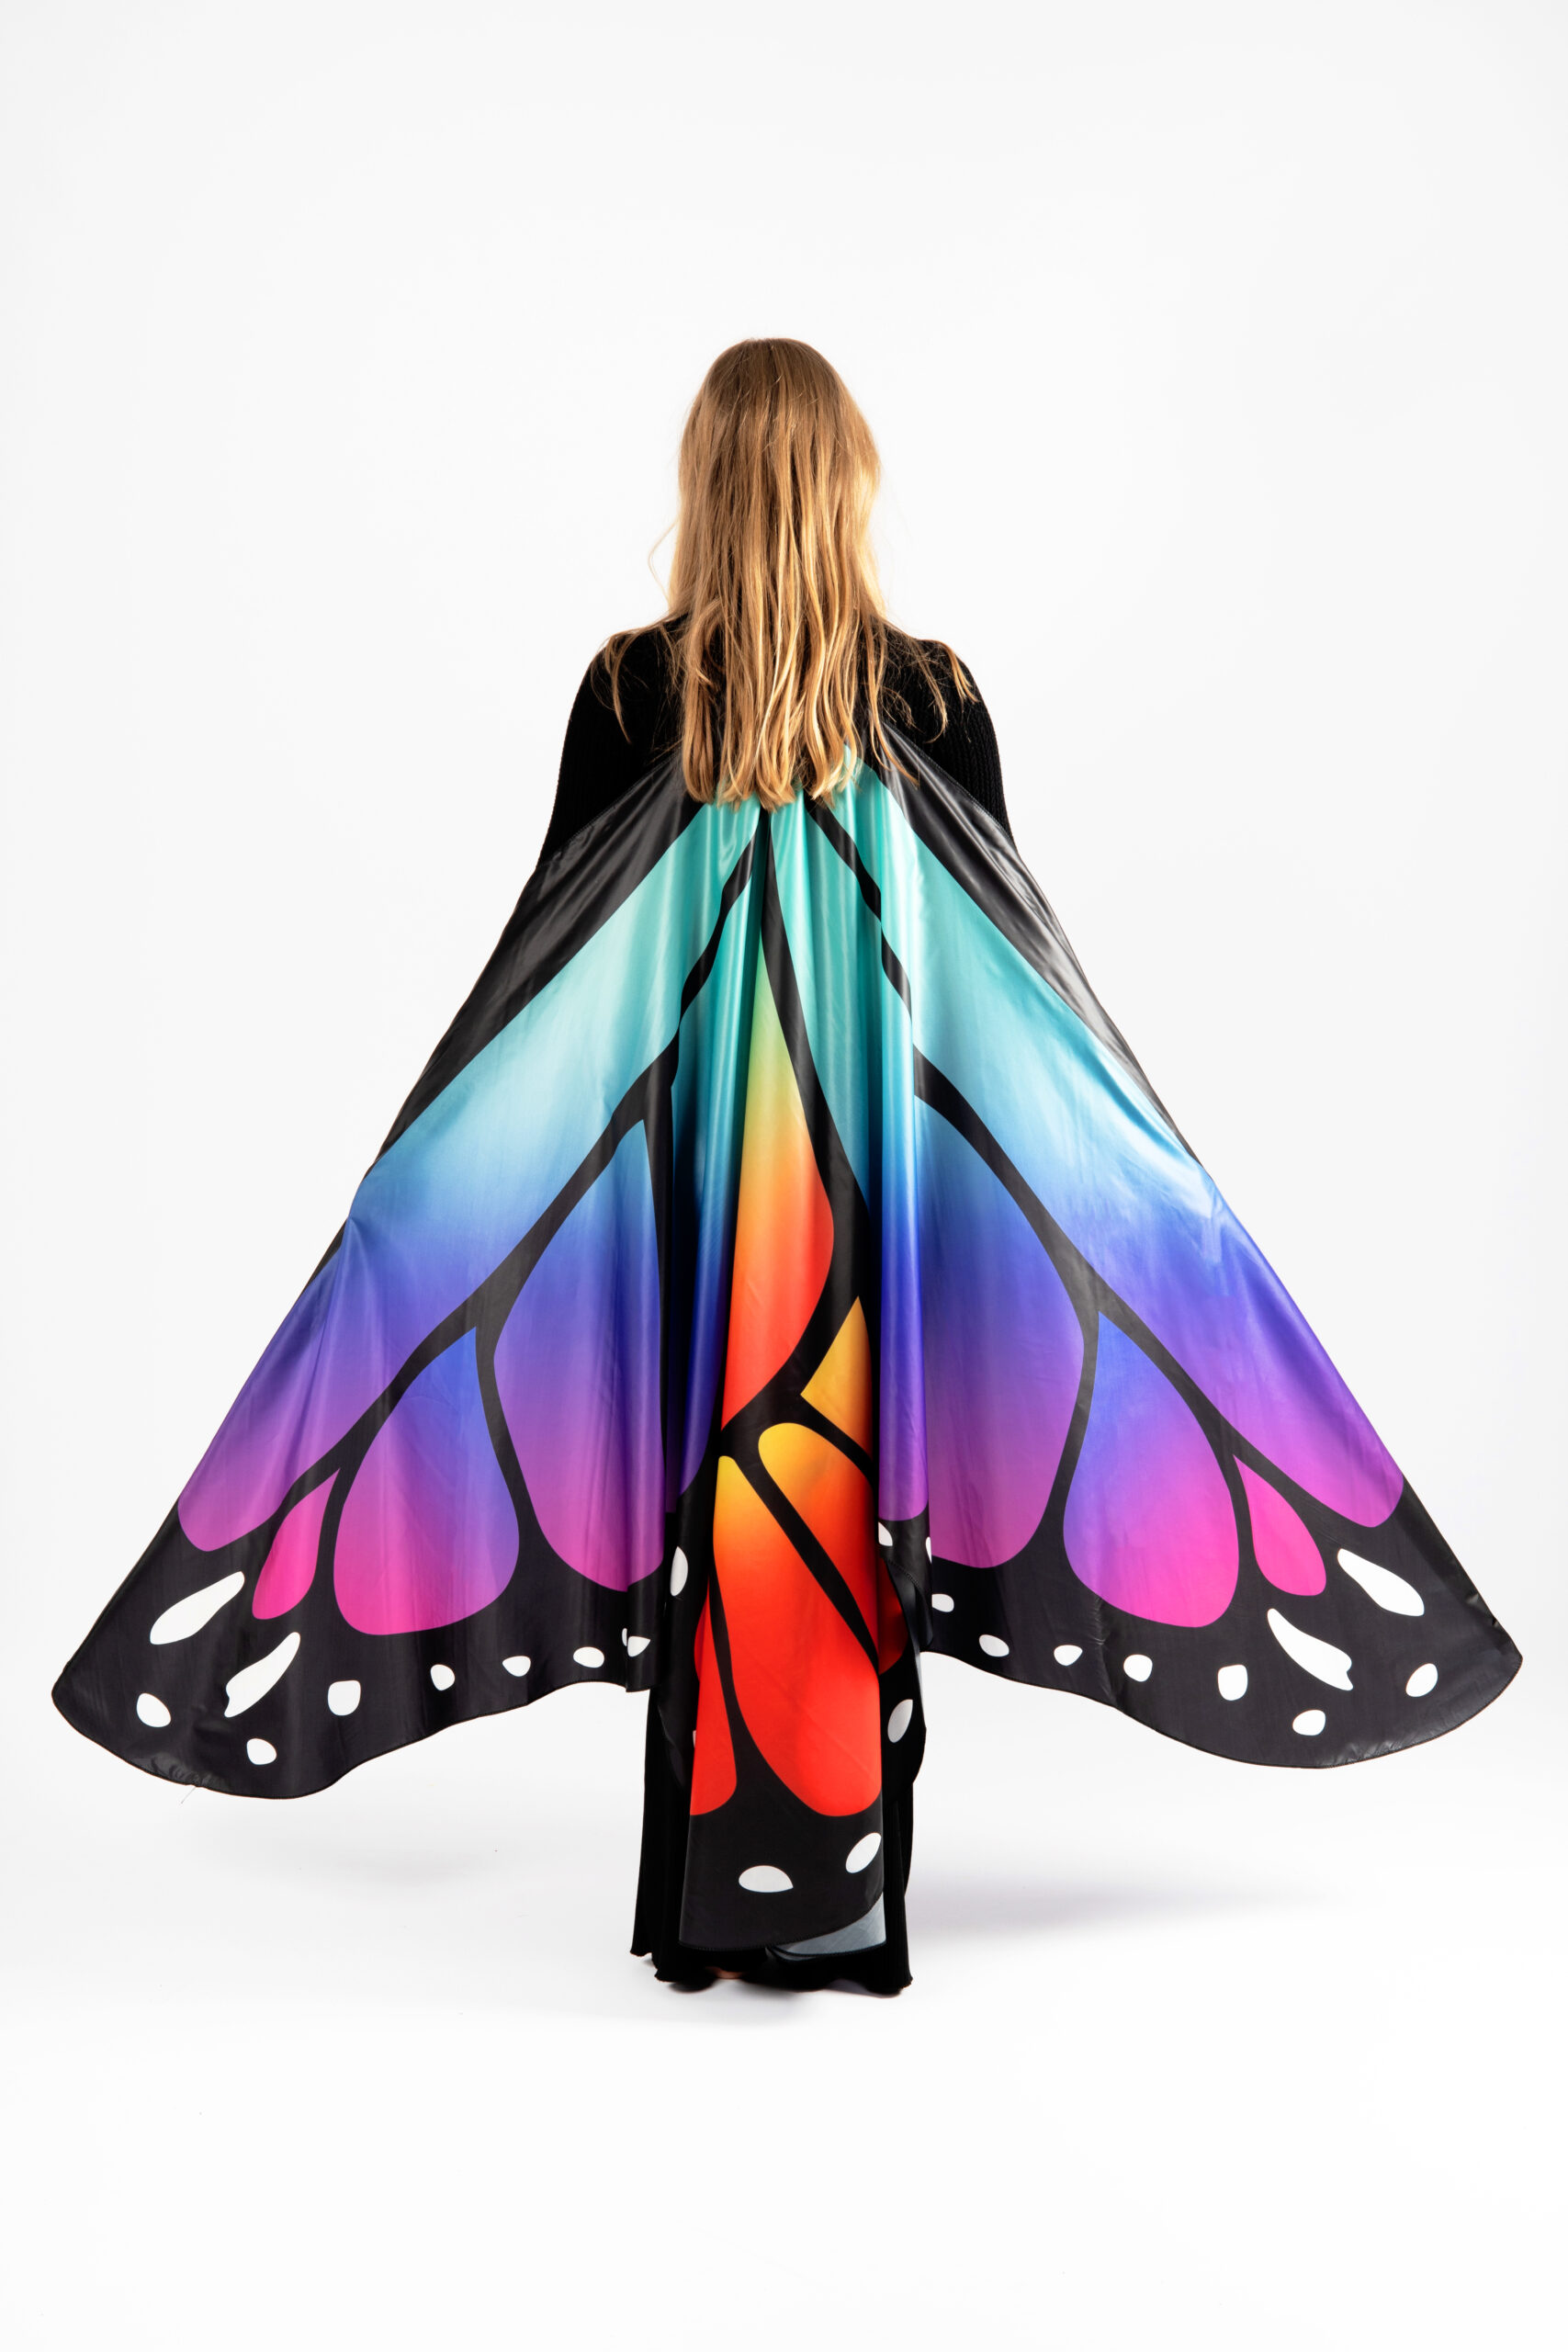 Een centrale tool die een belangrijke rol speelt aangenaam vasteland Grote vlinder vleugels kostuum pak regenboog volwassenen kopen? -  FeestinjeBeest.nl